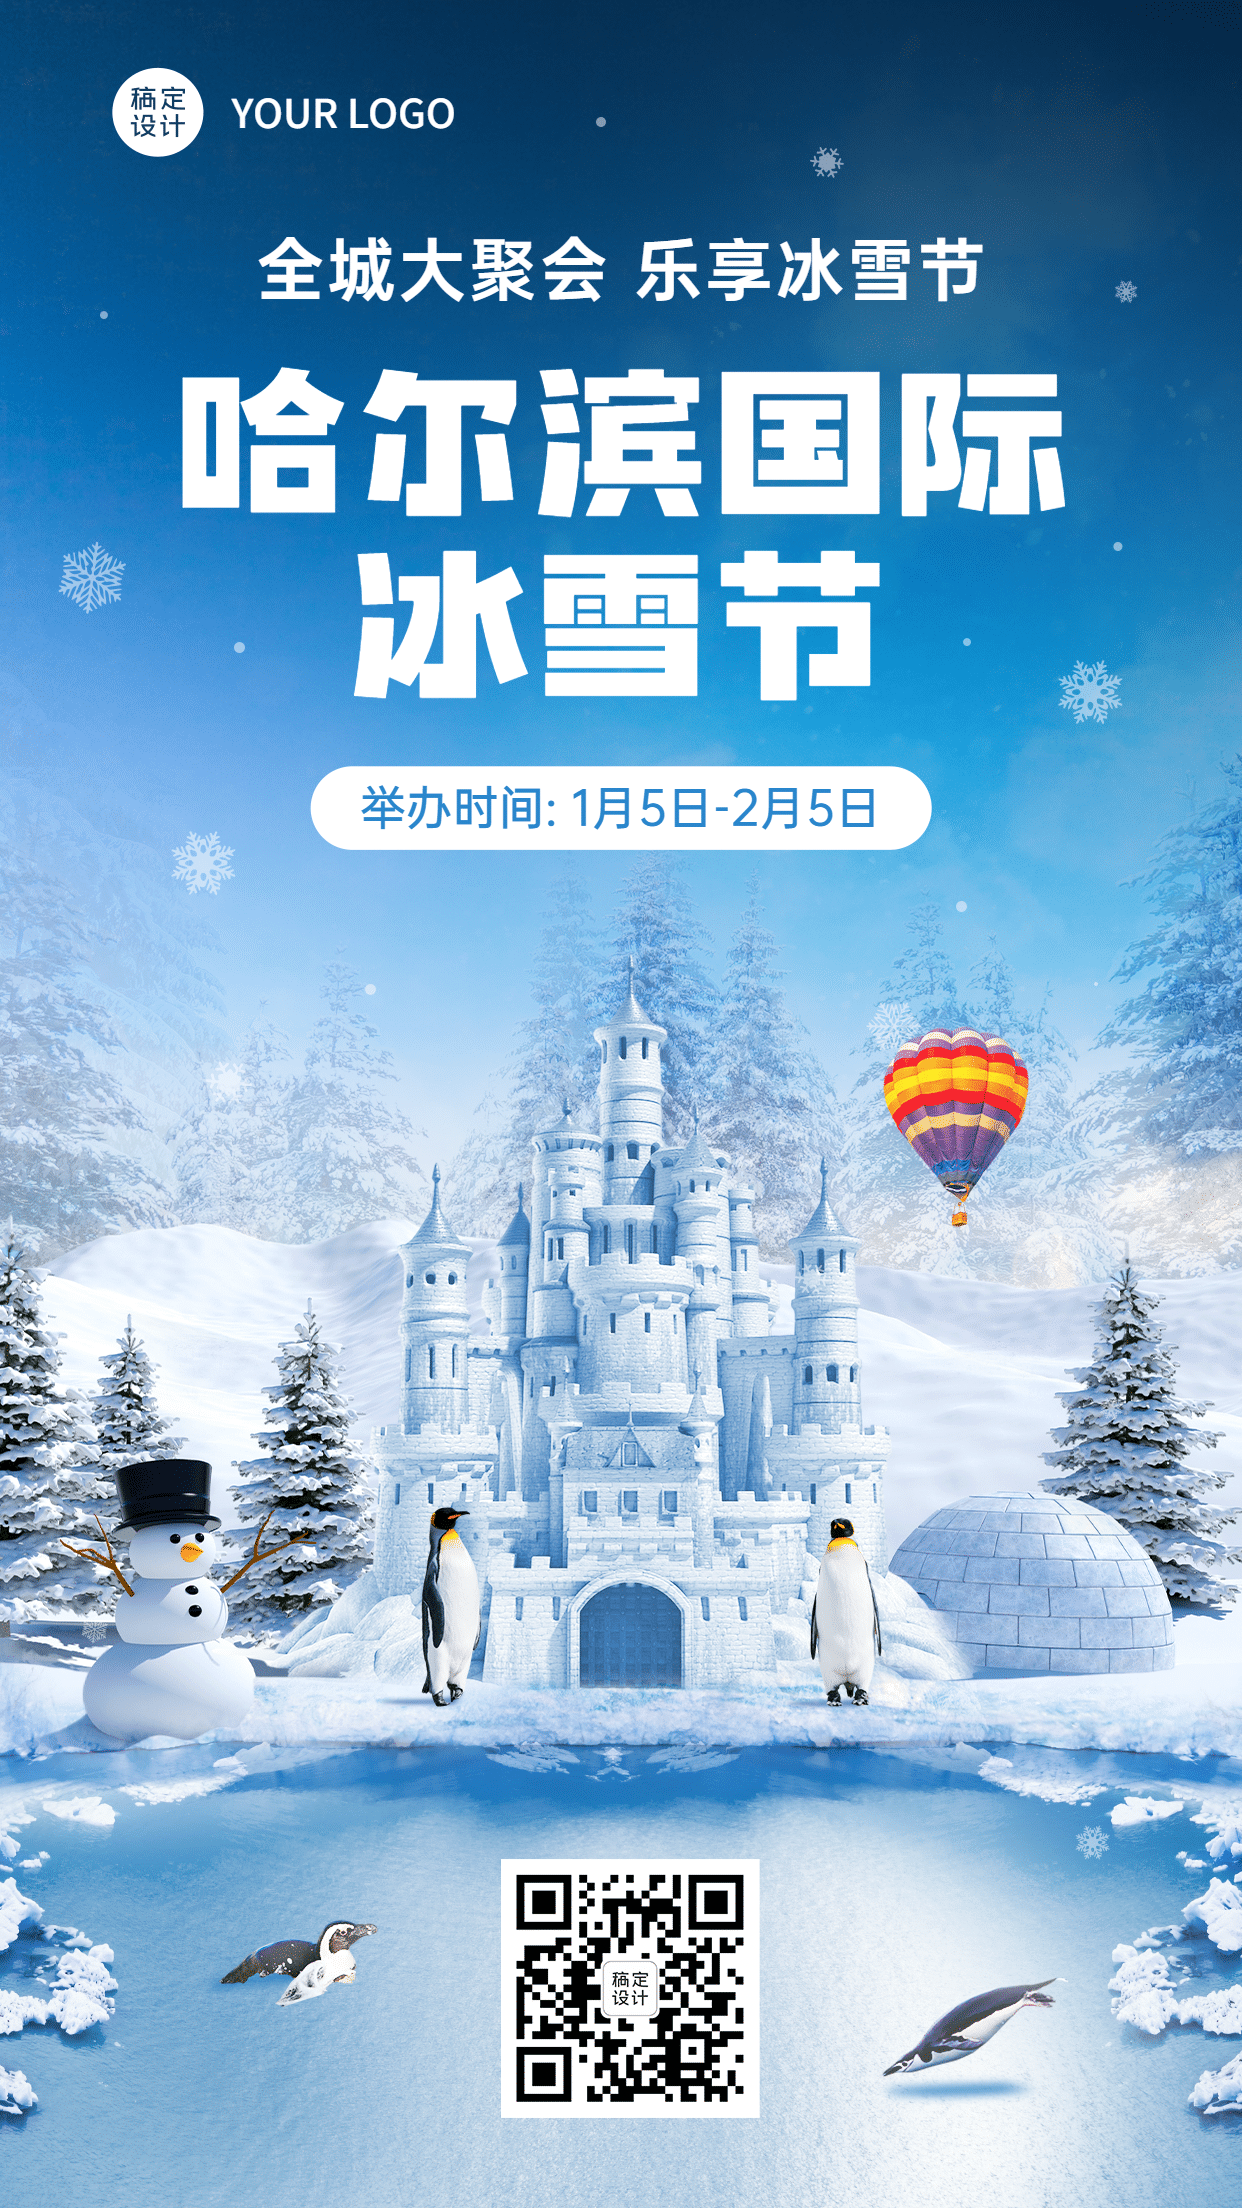 冬季哈尔滨国际冰雪节活动宣传实景海报预览效果